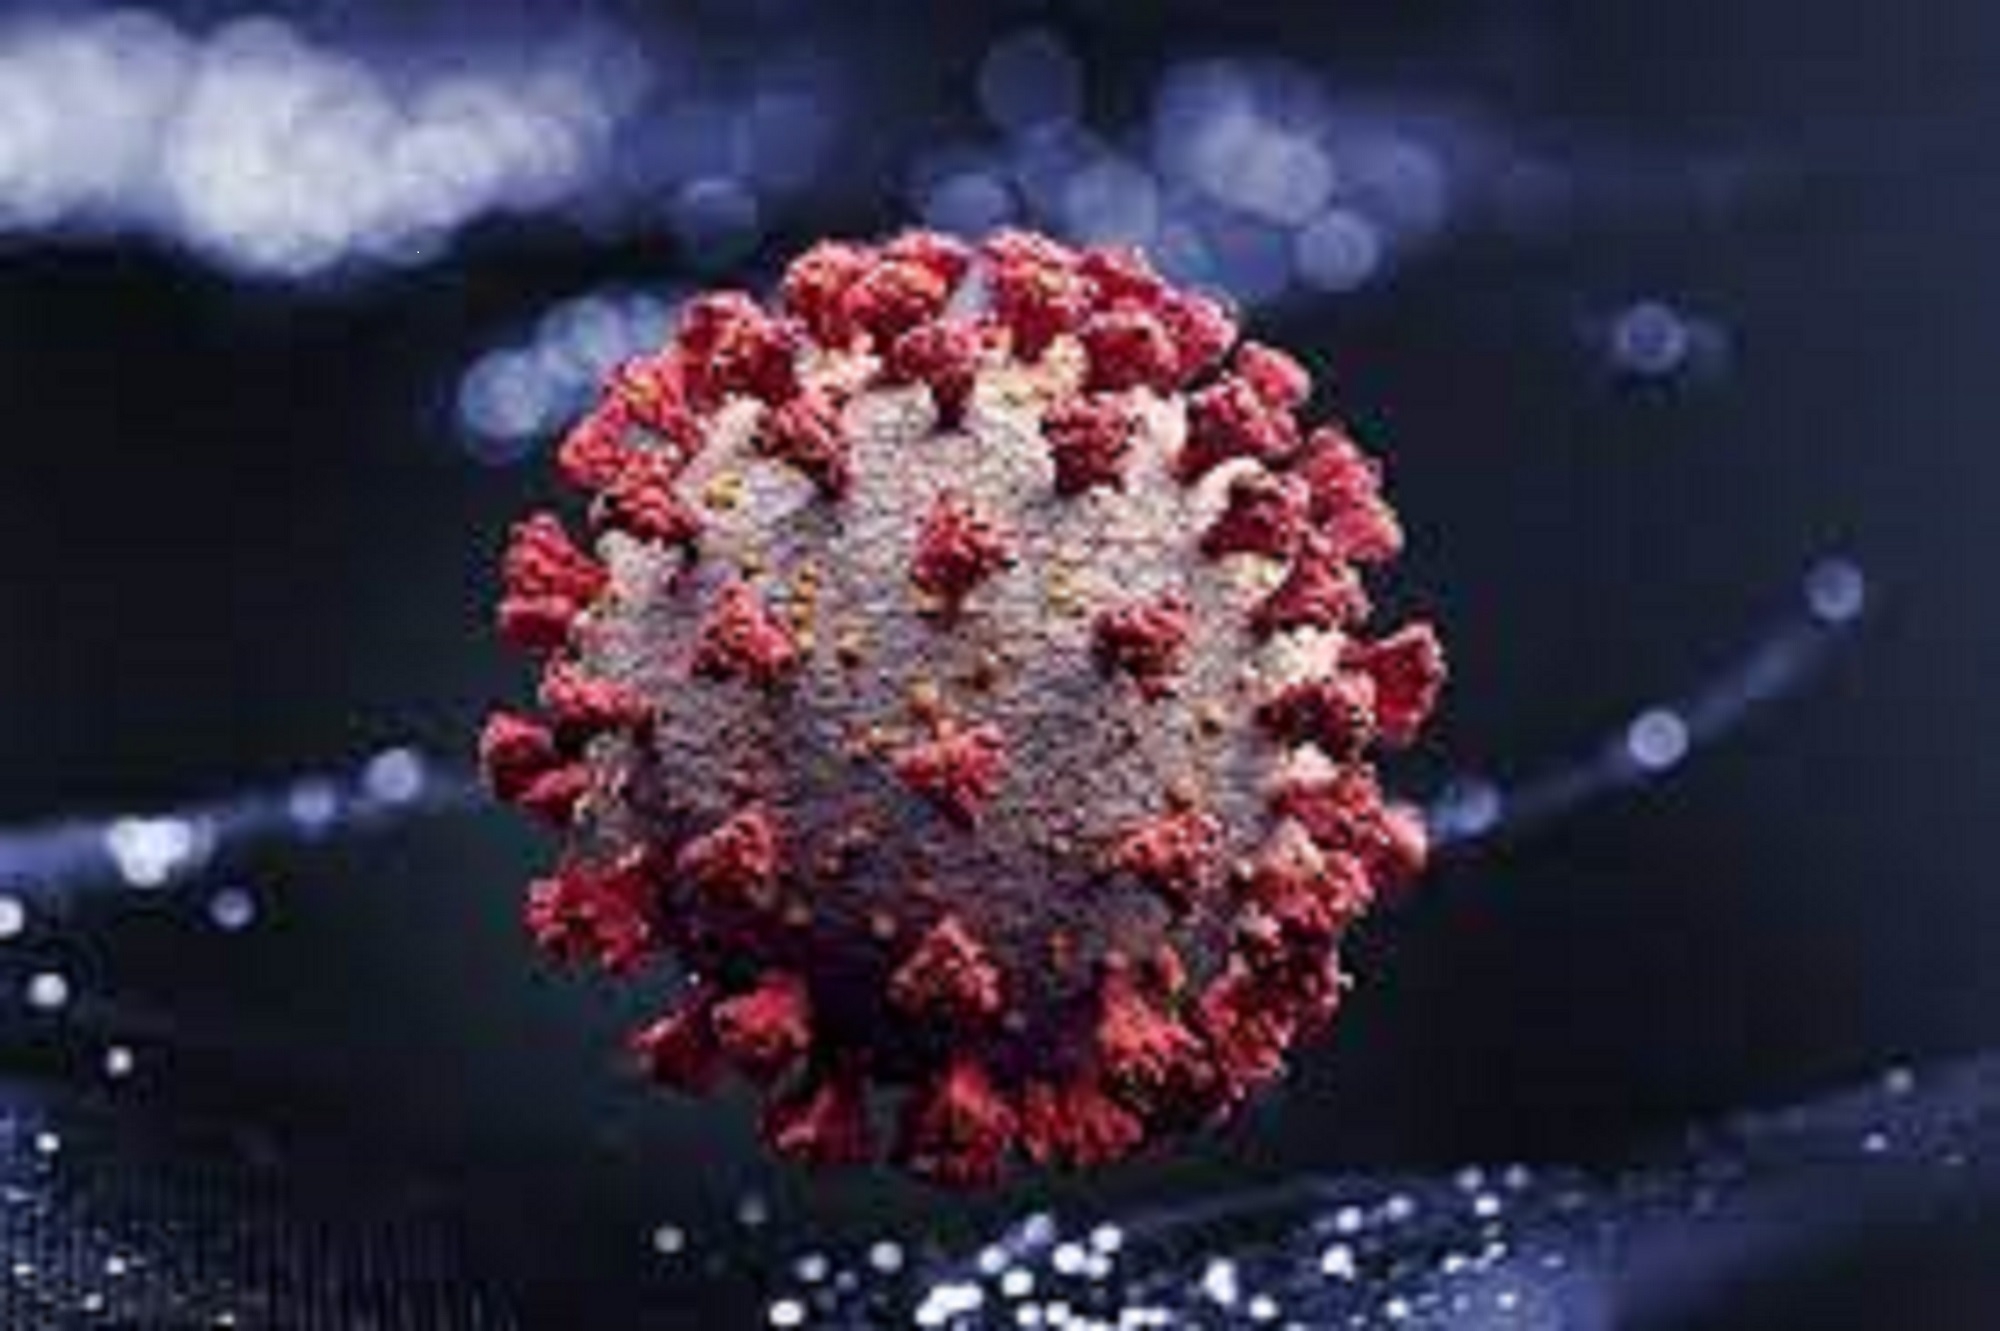 Representação artística do novo coronavírus. Getty Images